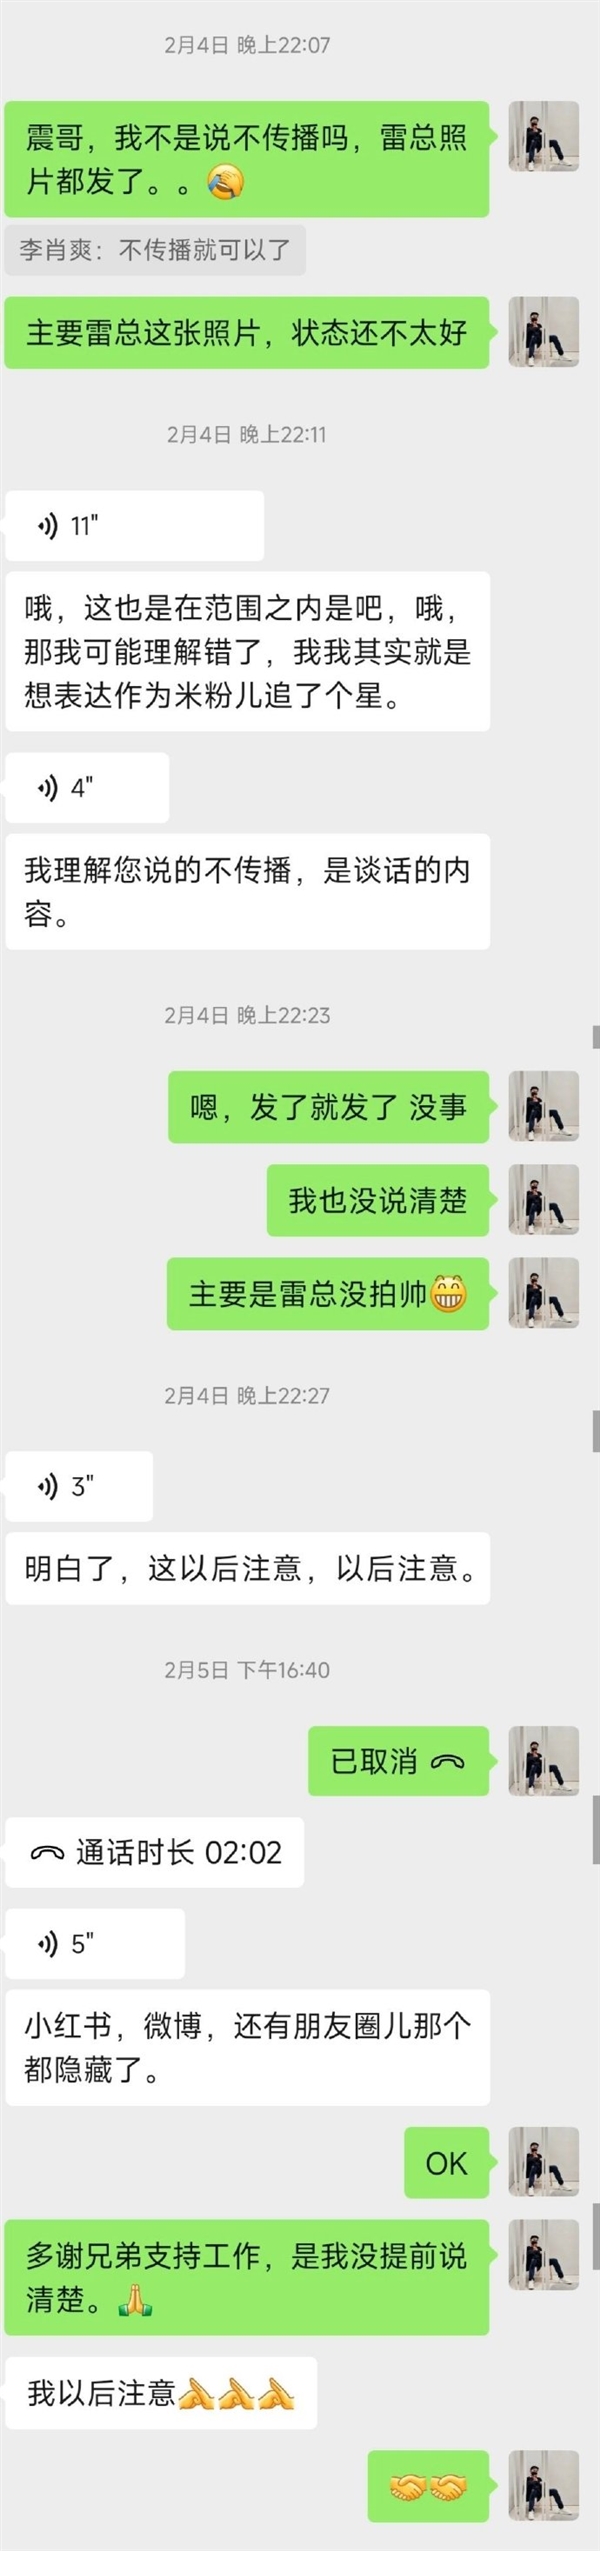 小米汽车副总裁李肖爽回应“陈震删雷军合影”：炒作这事实在匪夷所思